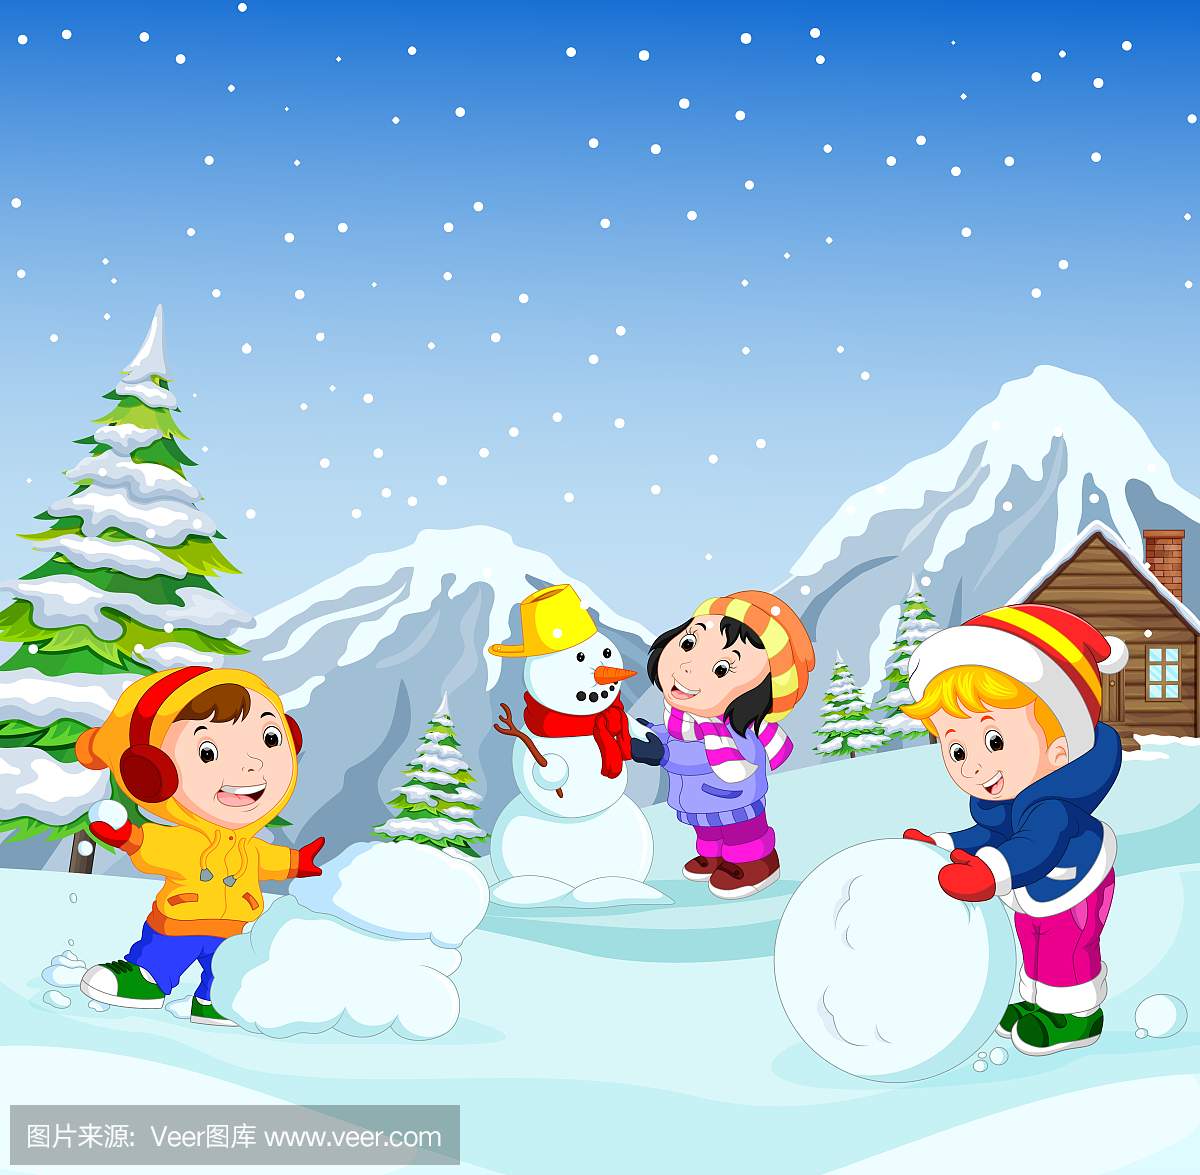 在冬天,孩子们非常高兴地在雪地里玩耍